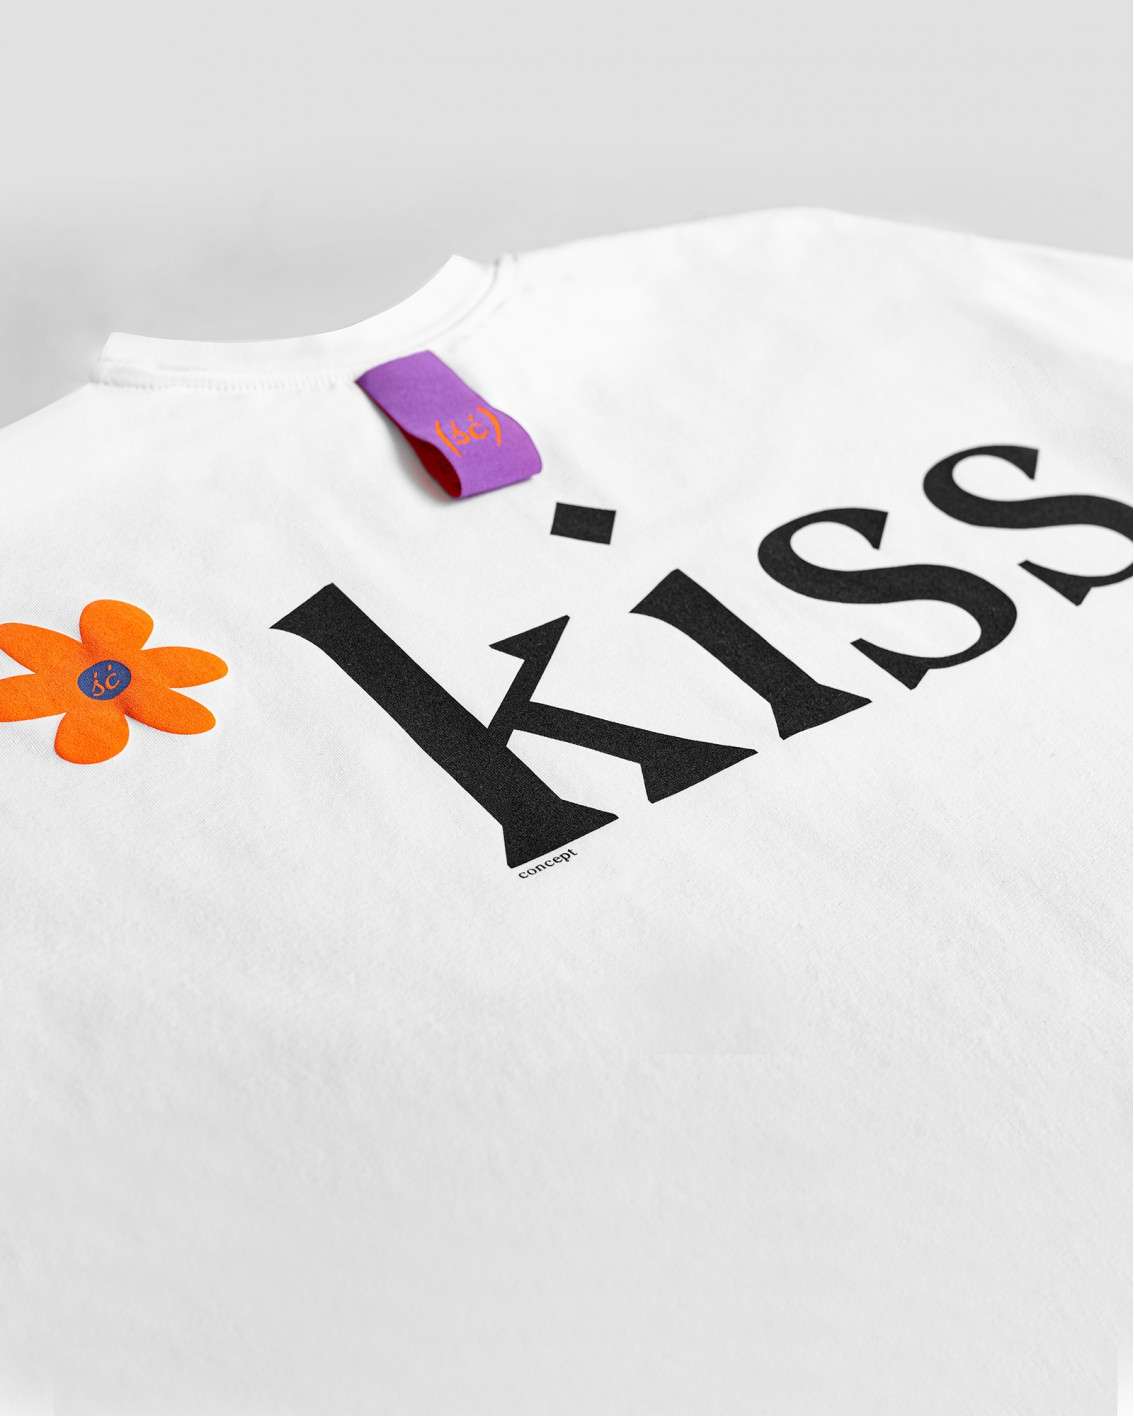 NEW! Biały t-shirt kiss :*